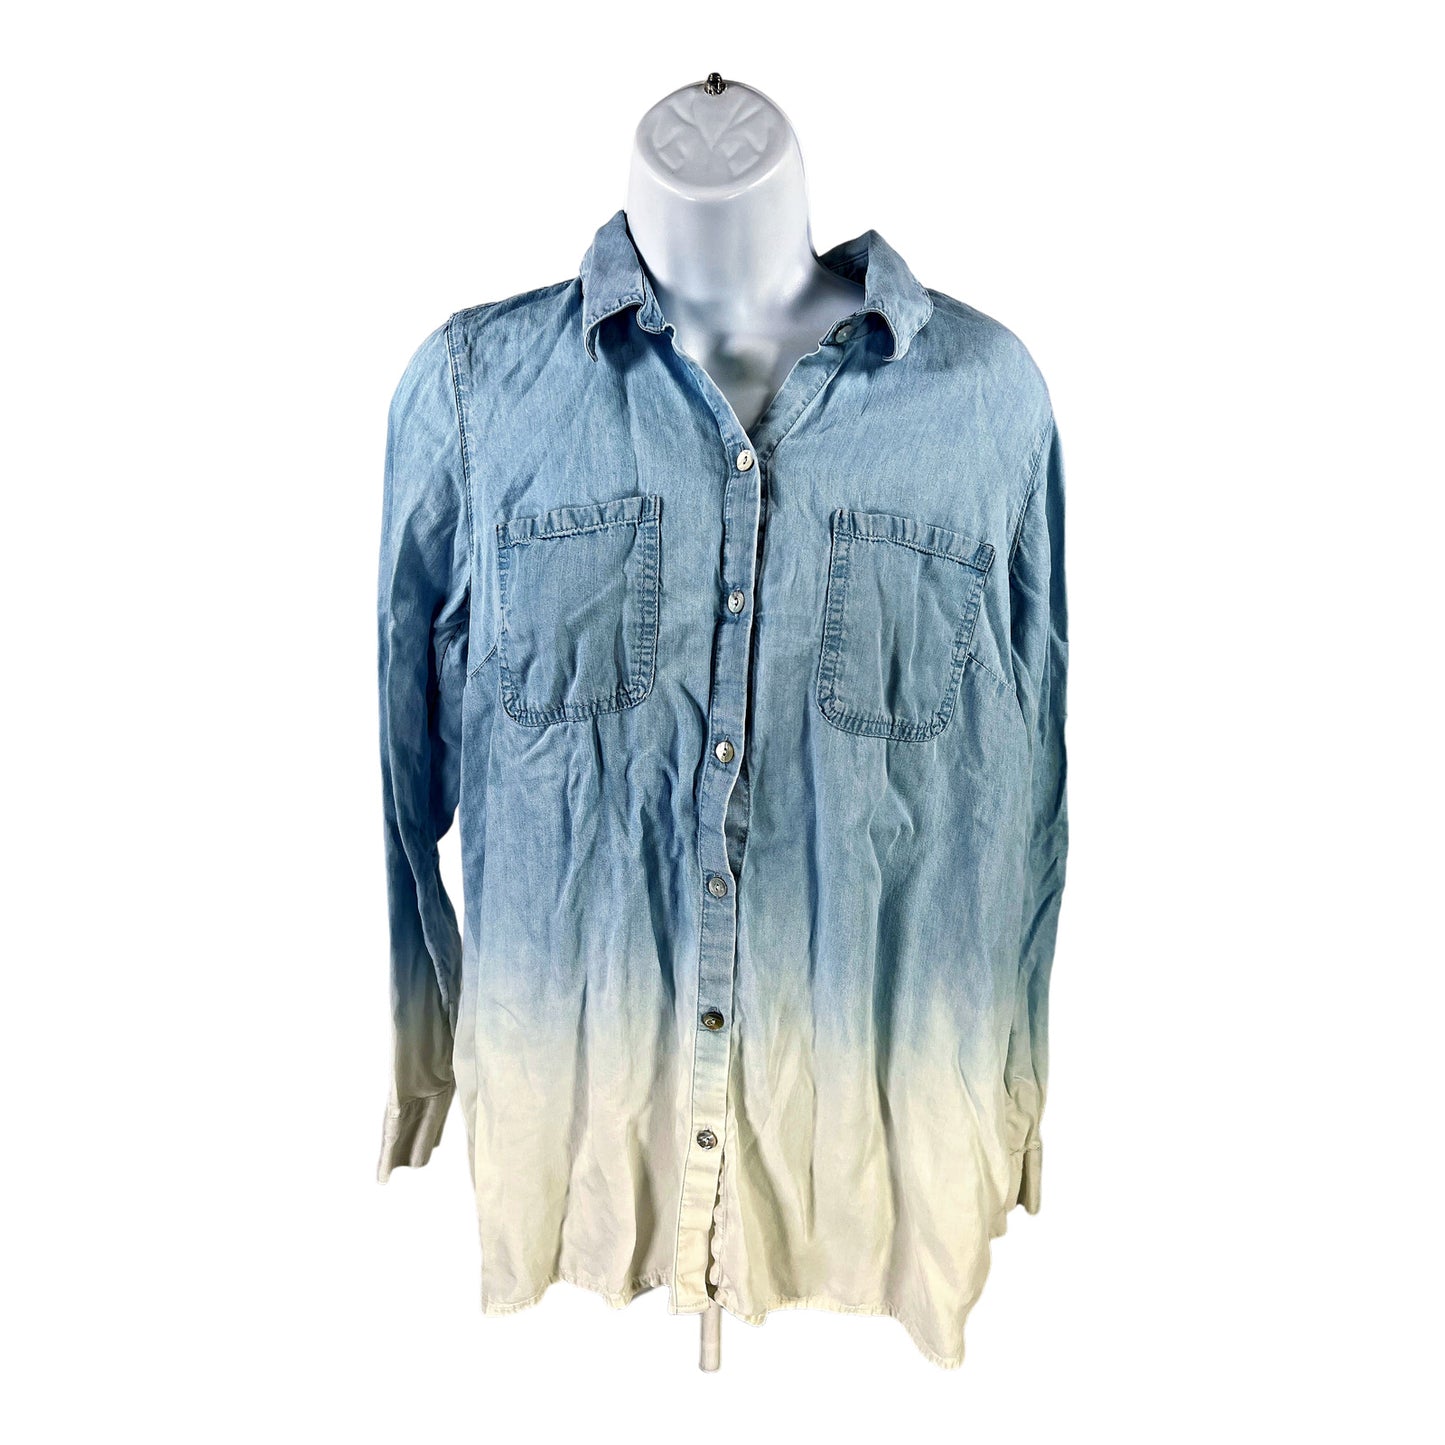 J.Jill Denim Women’s Blue/White Long Sleeve Button Up Shirt - XS